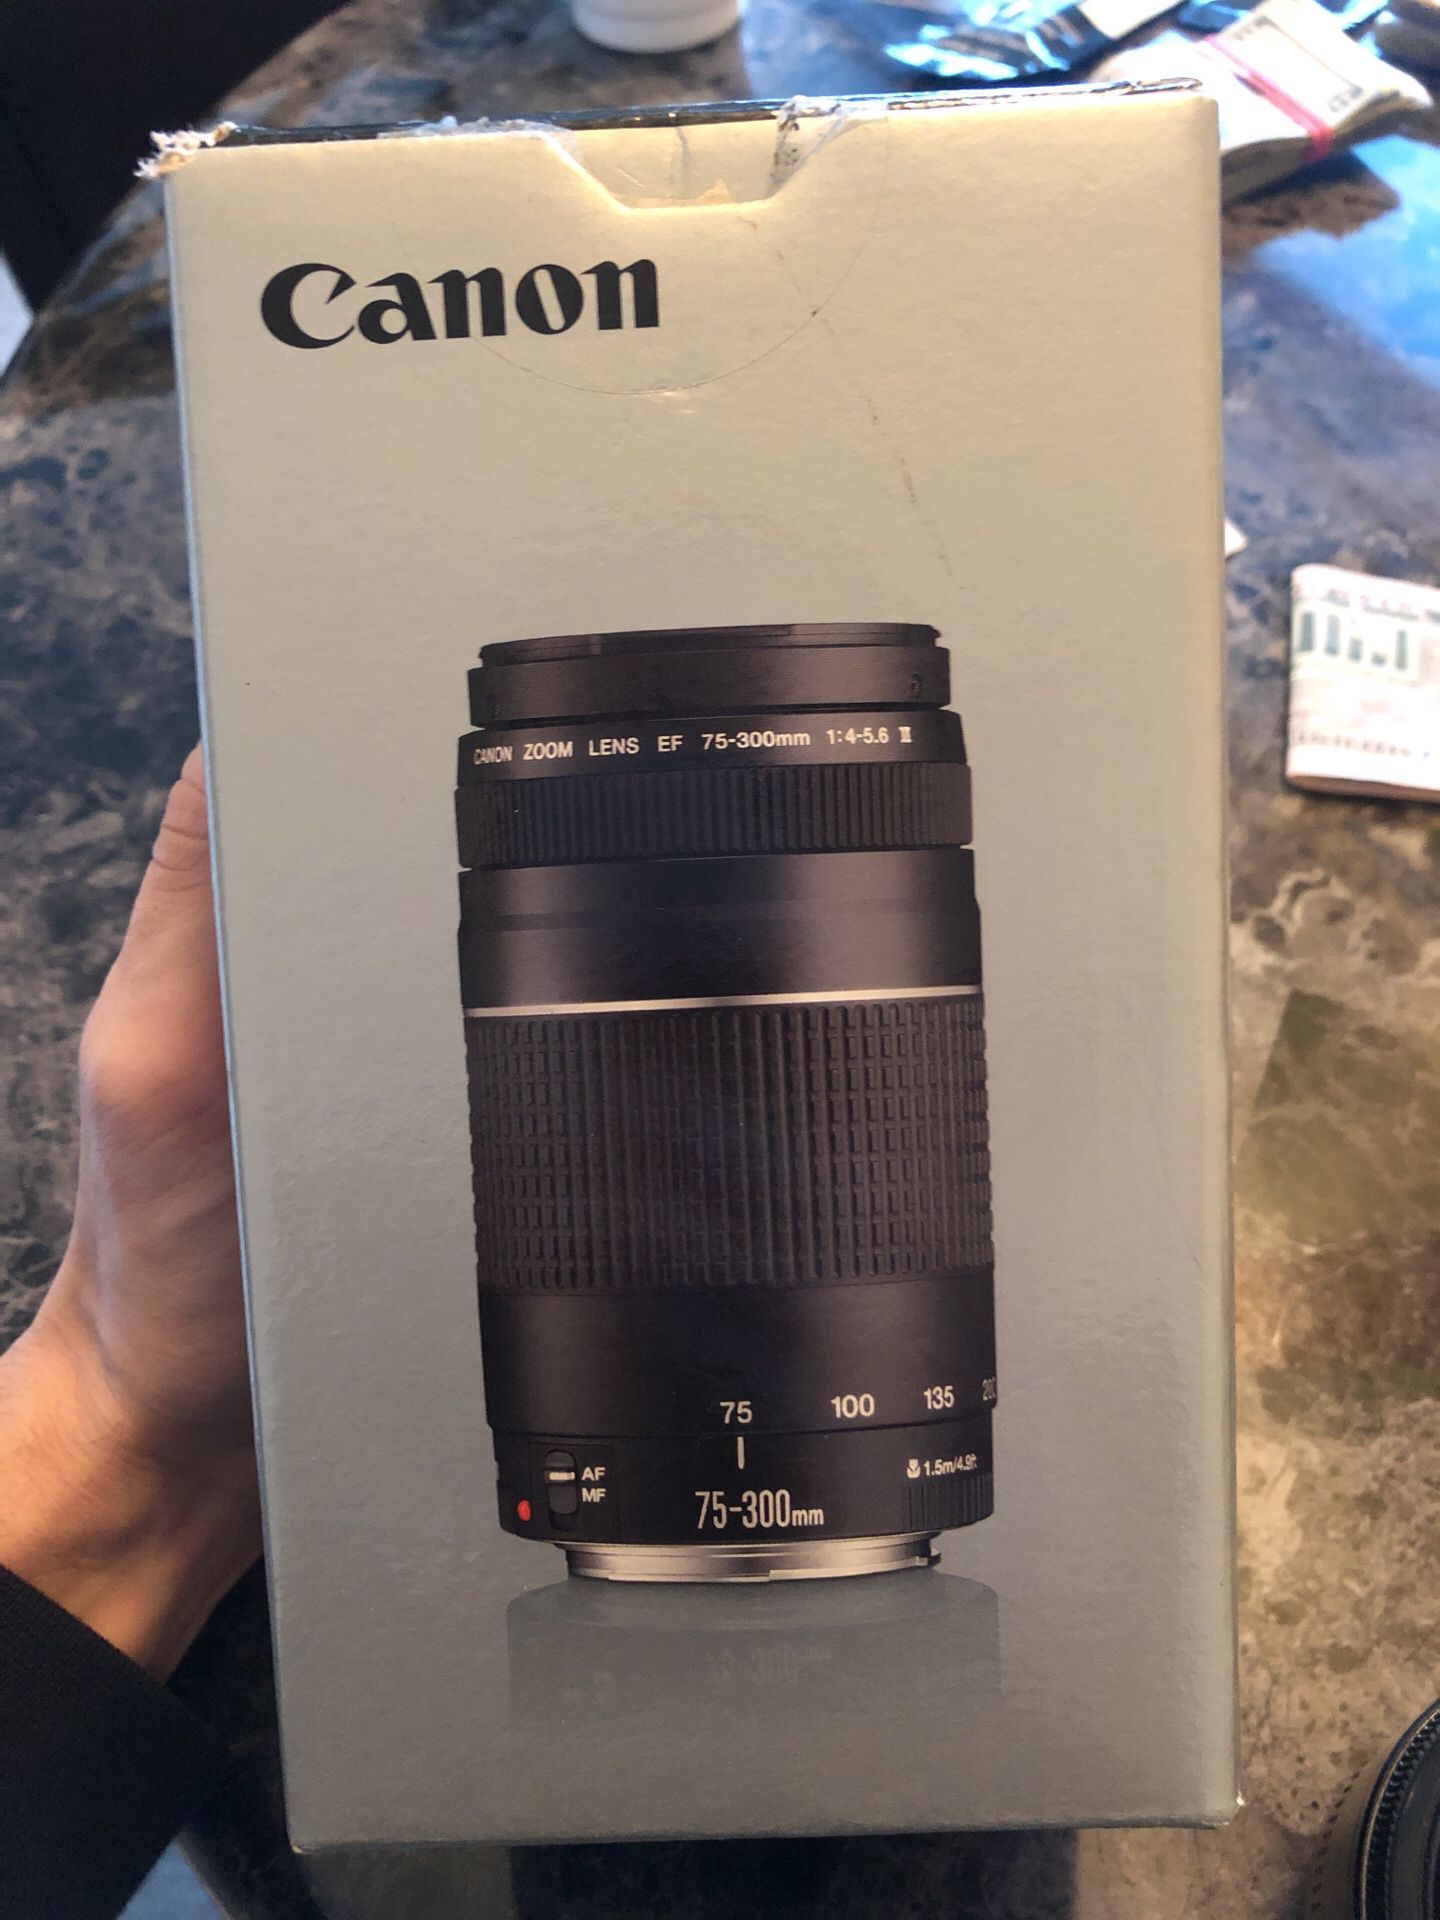 Canon lense $75